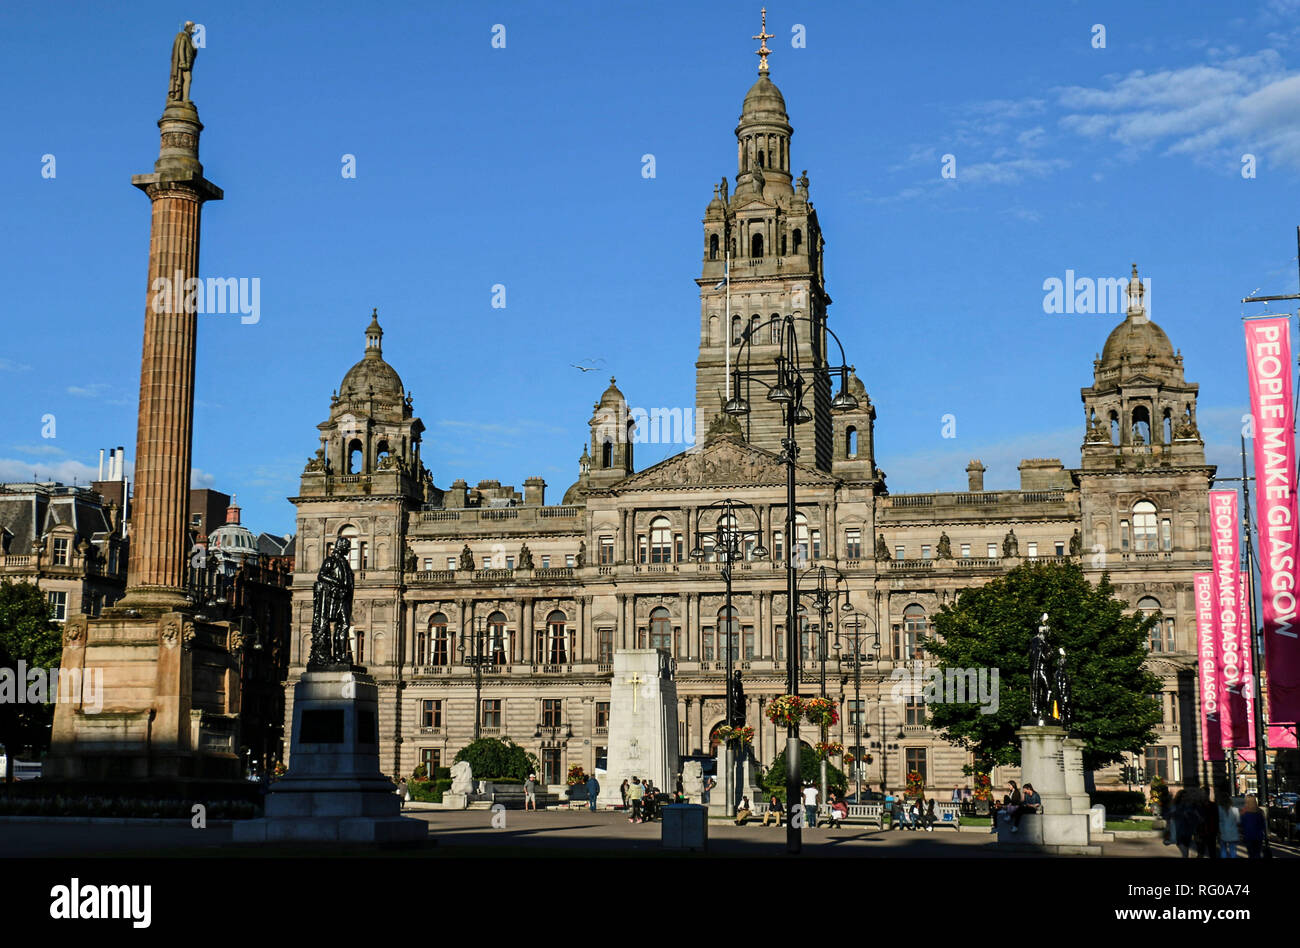 GLASGOW, Schottland, Großbritannien - 07 August 2015: Blick auf den George Square in Glasgow mit dem Glasgow City Chambers, Sitz der Stadtrat Glasgow Stockfoto